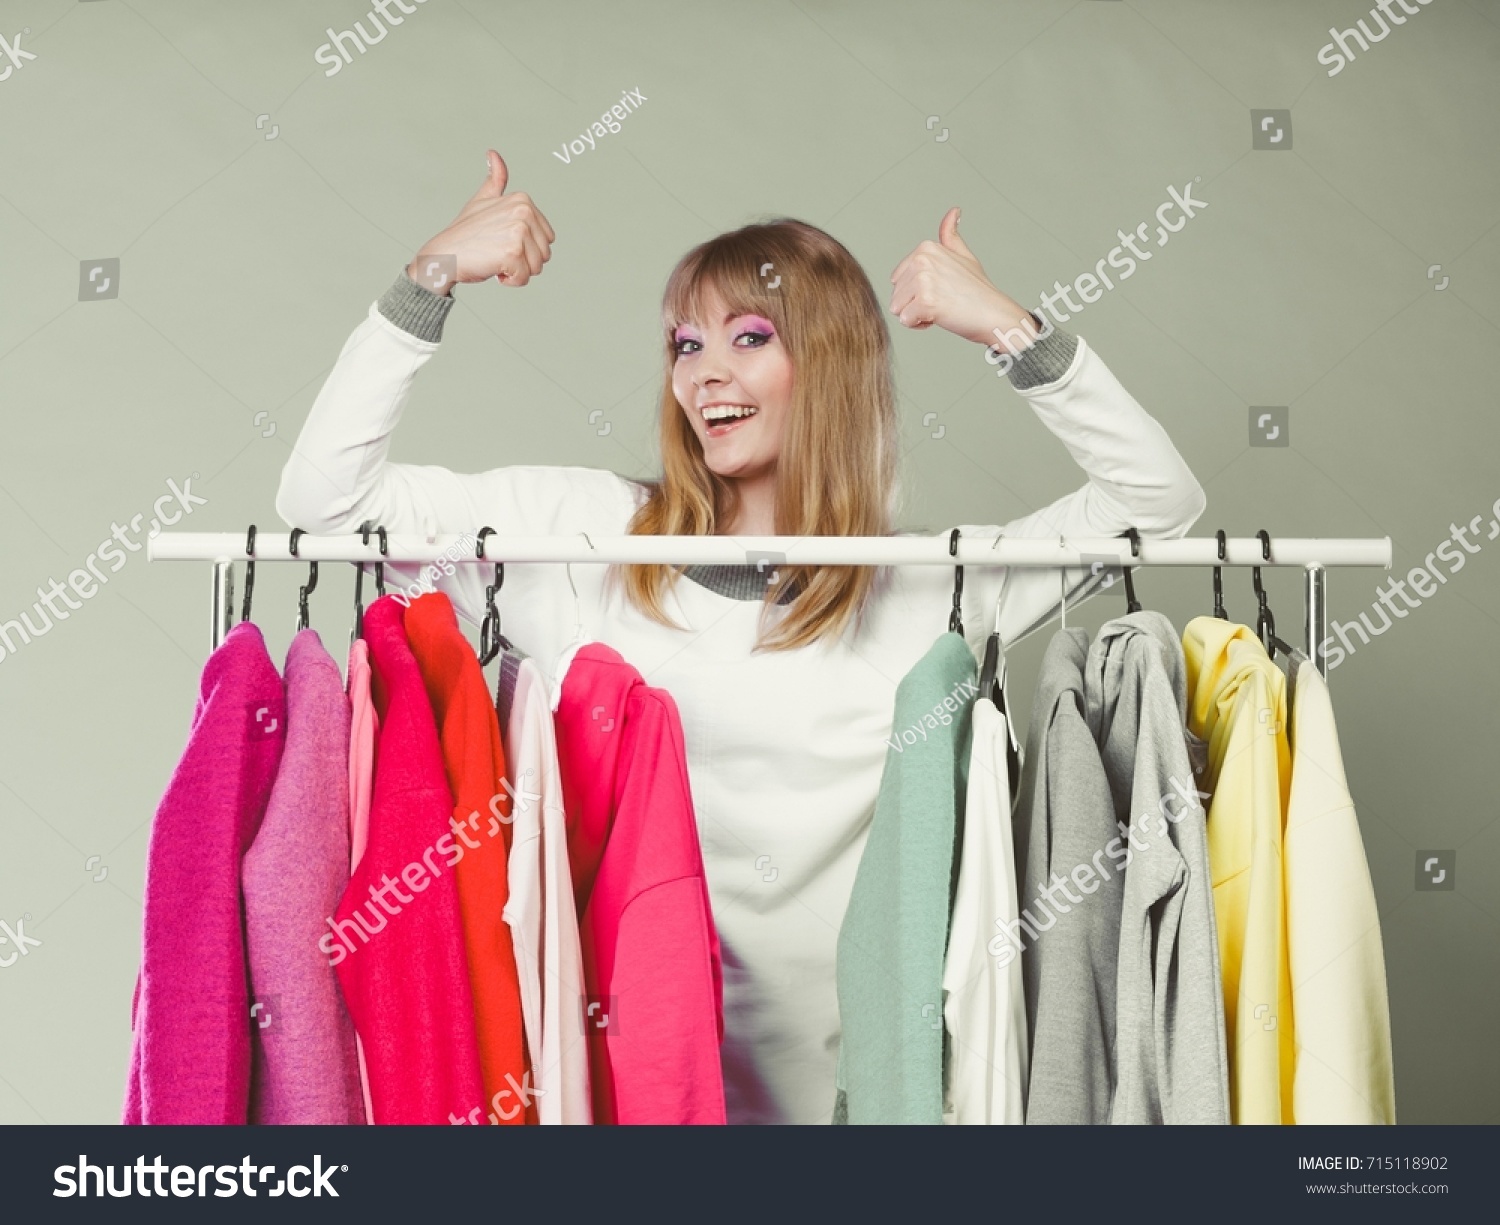 Неприятный запах от одежды. Выбор одежды. Выбирает одежду. Женщина выбирает. Шкафы для одежды выбор.